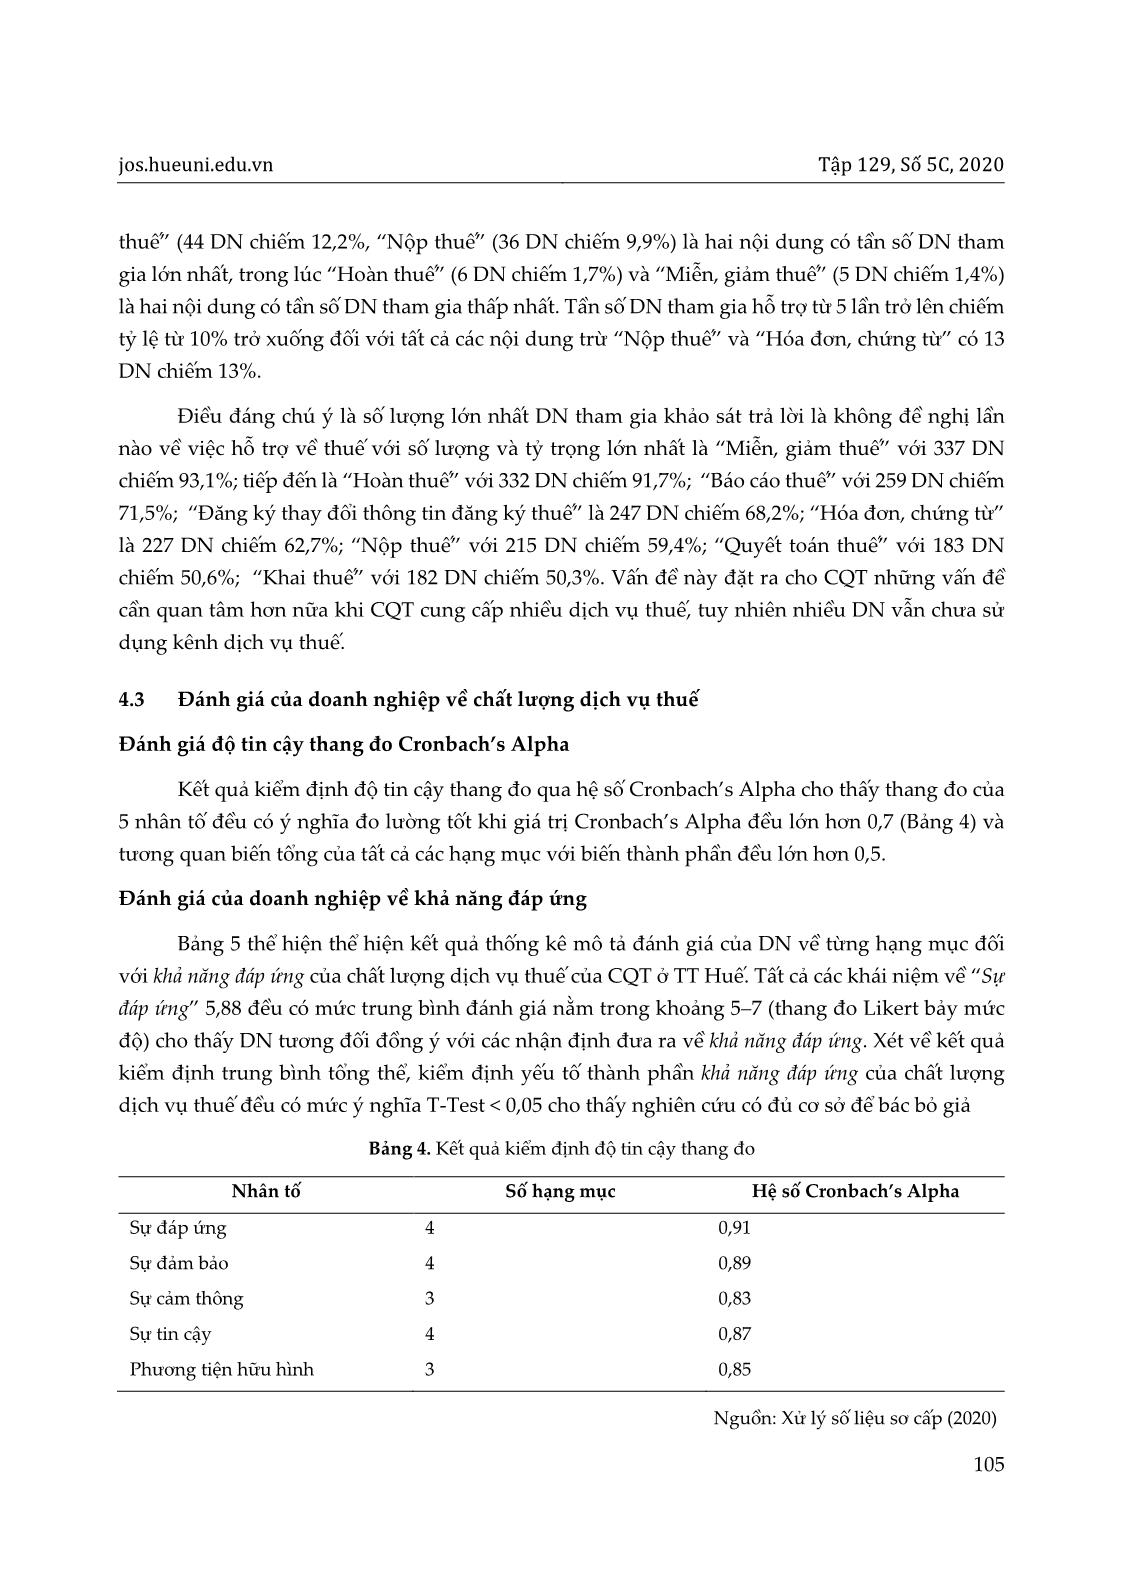 Chất lượng dịch vụ thuế cho doanh nghiệp: Trường hợp nghiên cứu tại Thừa Thiên Huế trang 9